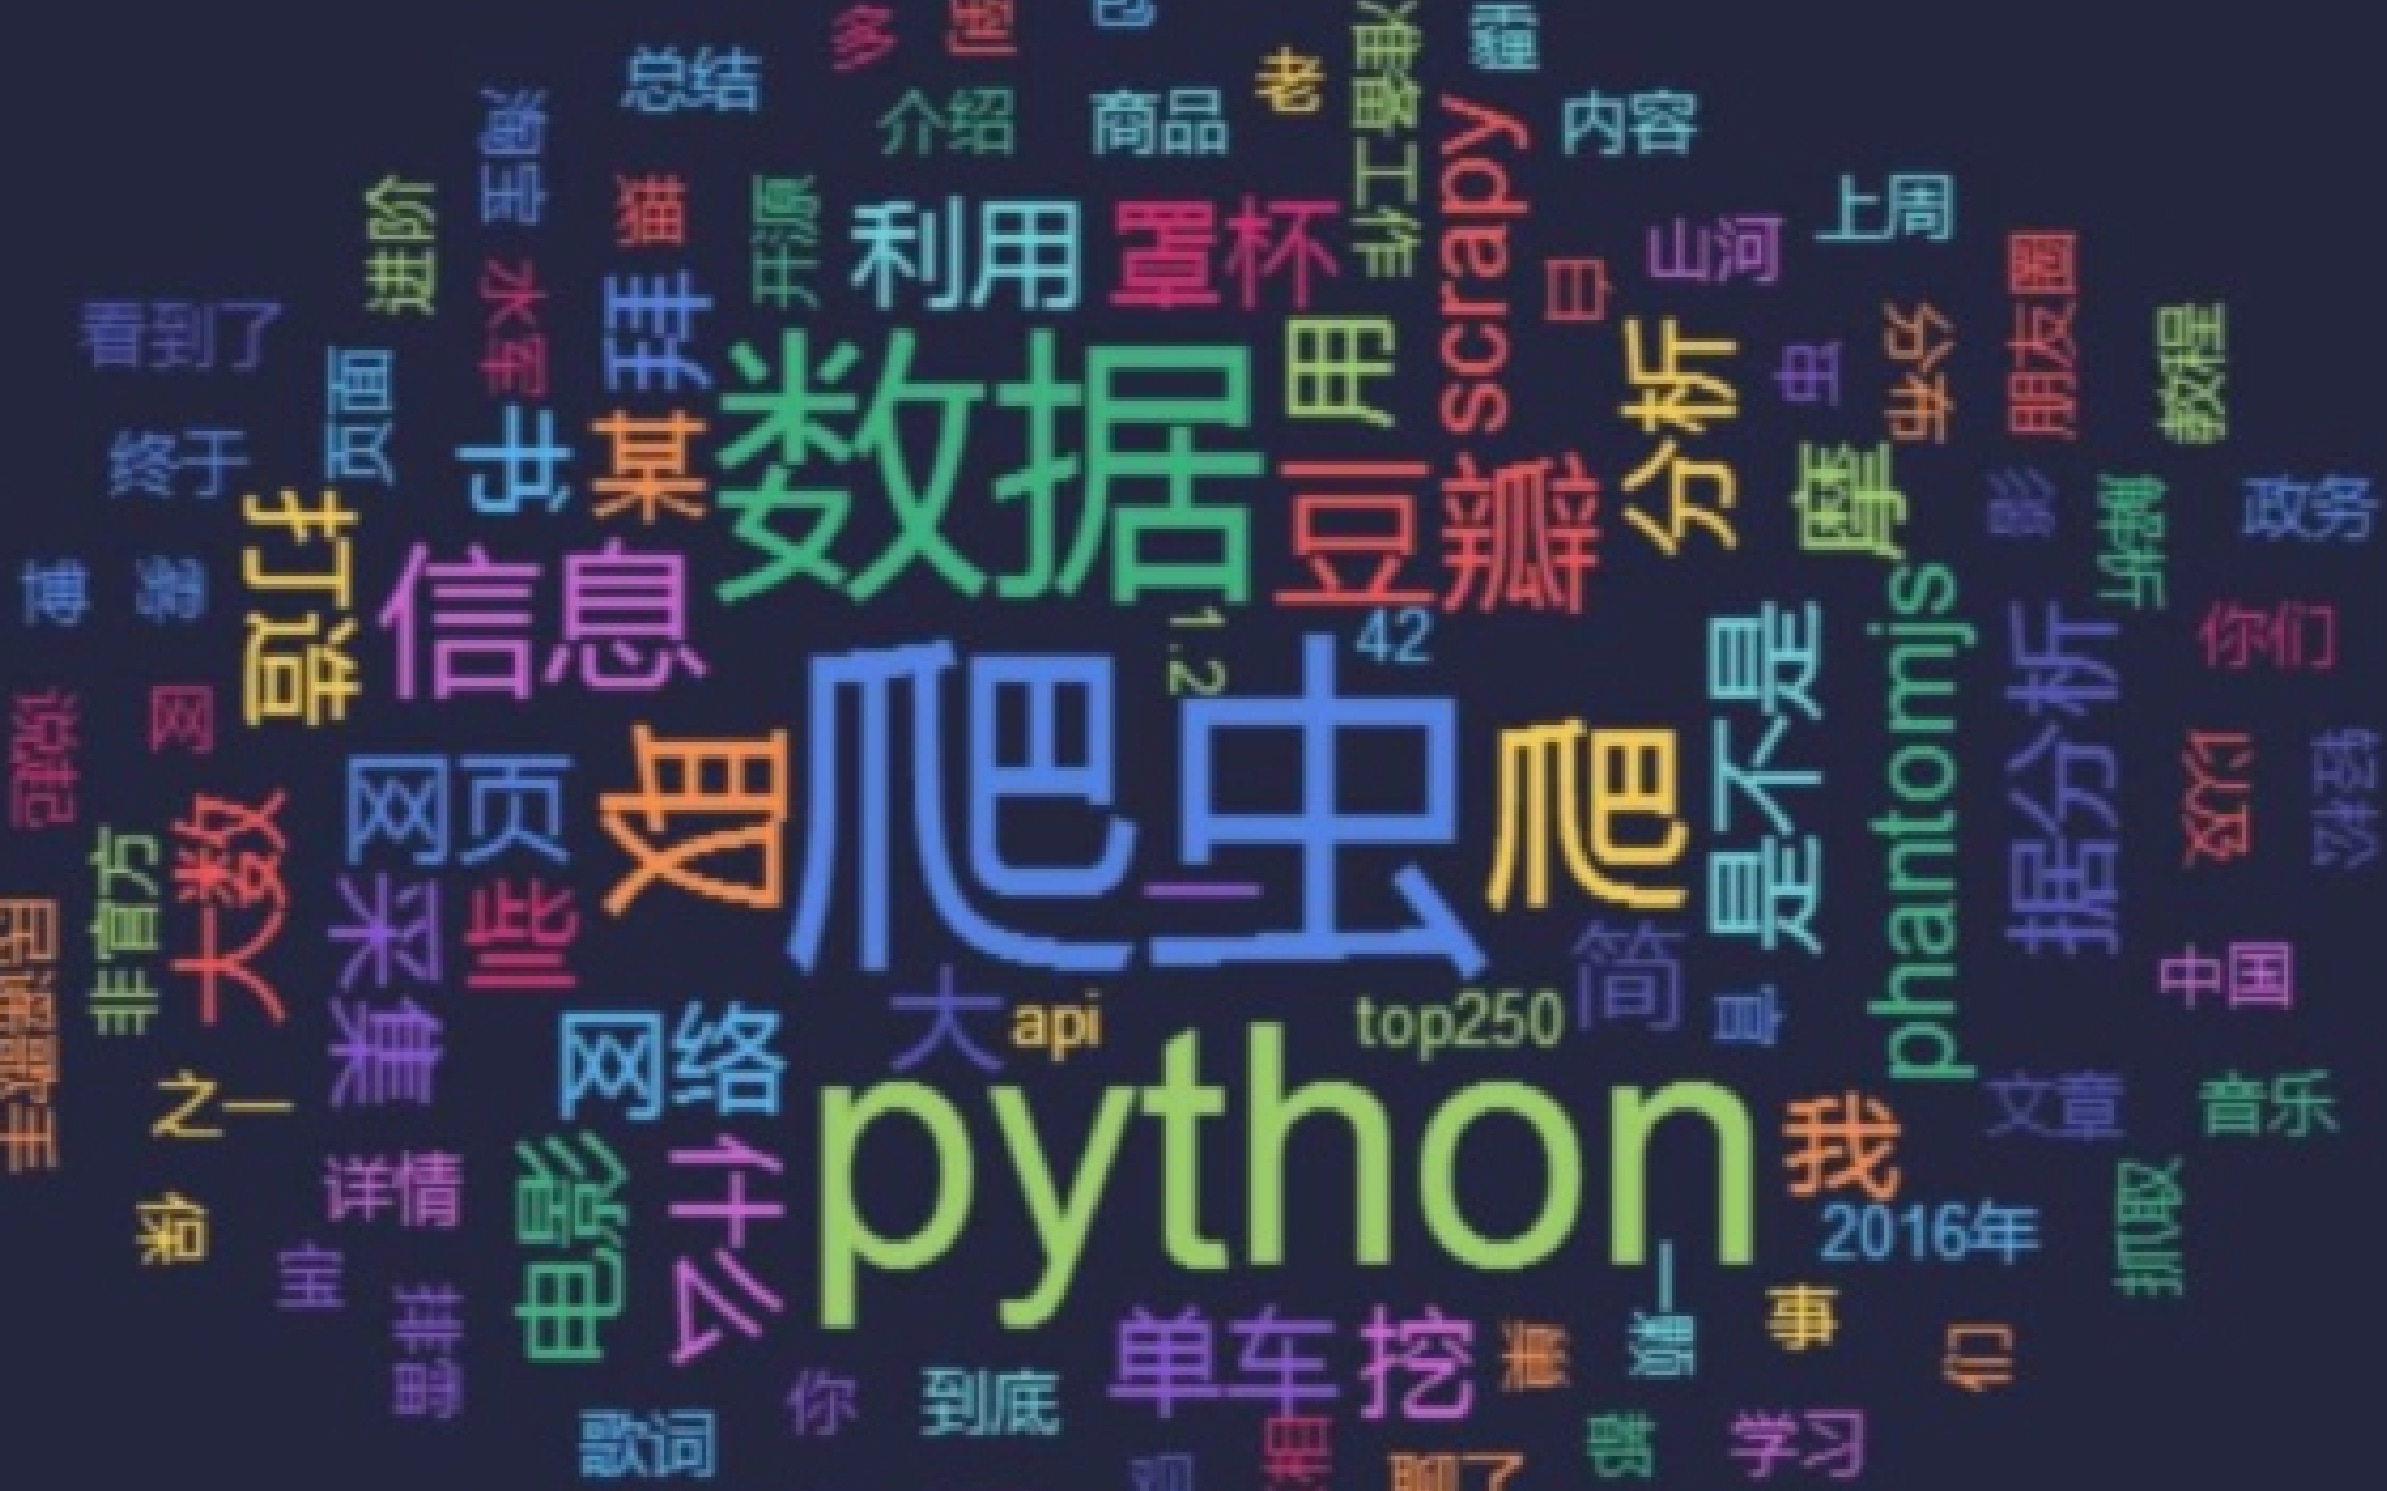 用Python进行简单的爬虫，爬取你想要的图作为训练样本补充-CSDN博客